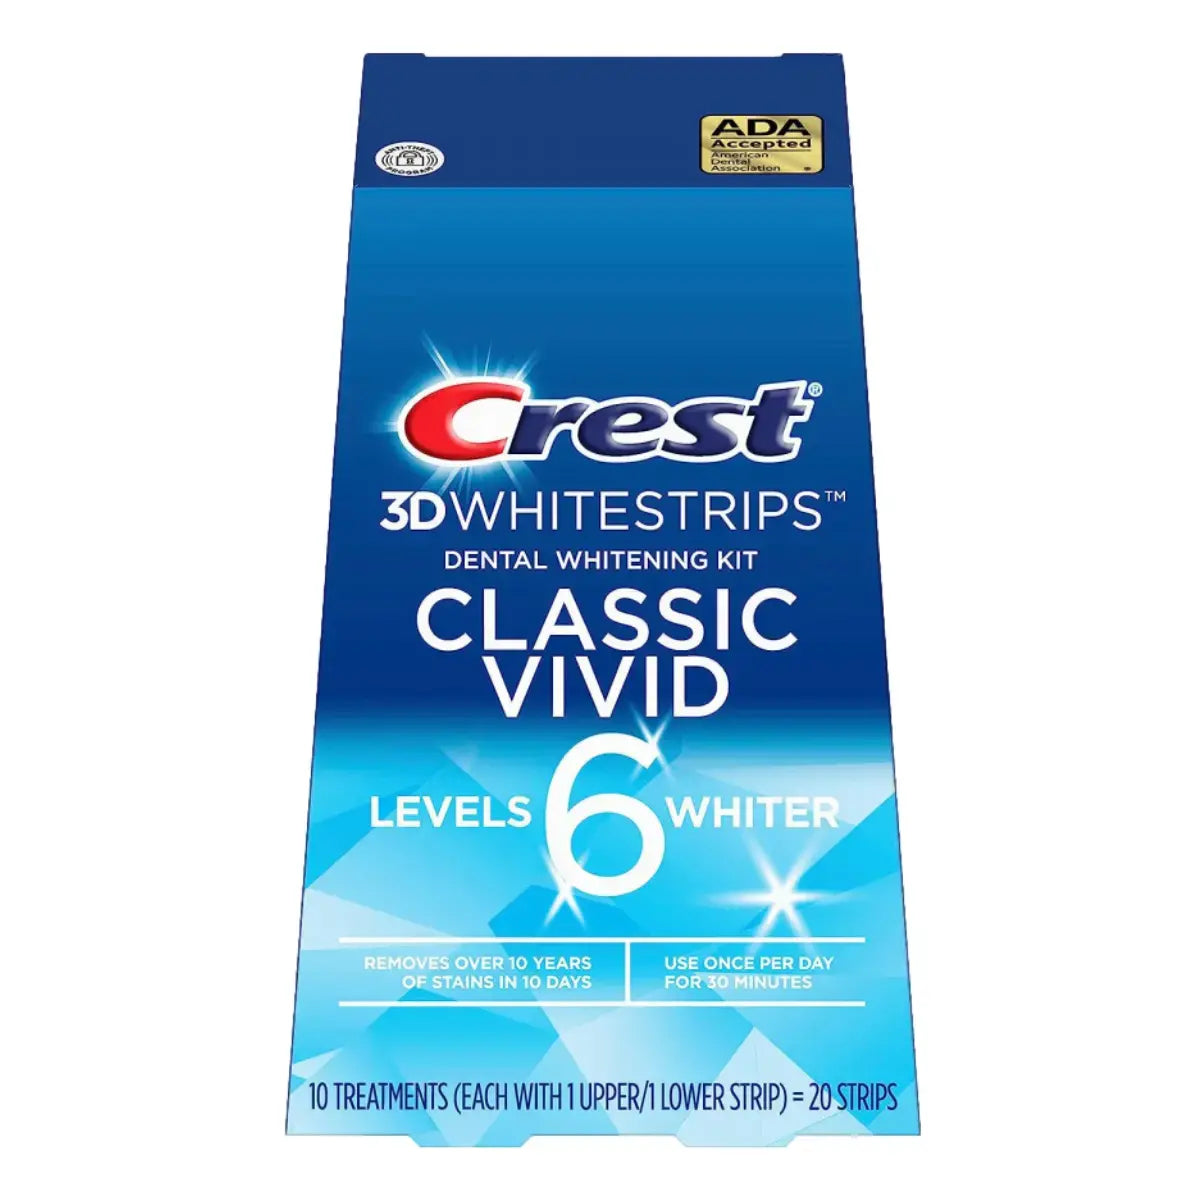 Bleekstrips Crest Classic Vivid 6 Levels Whiter Whitestrips